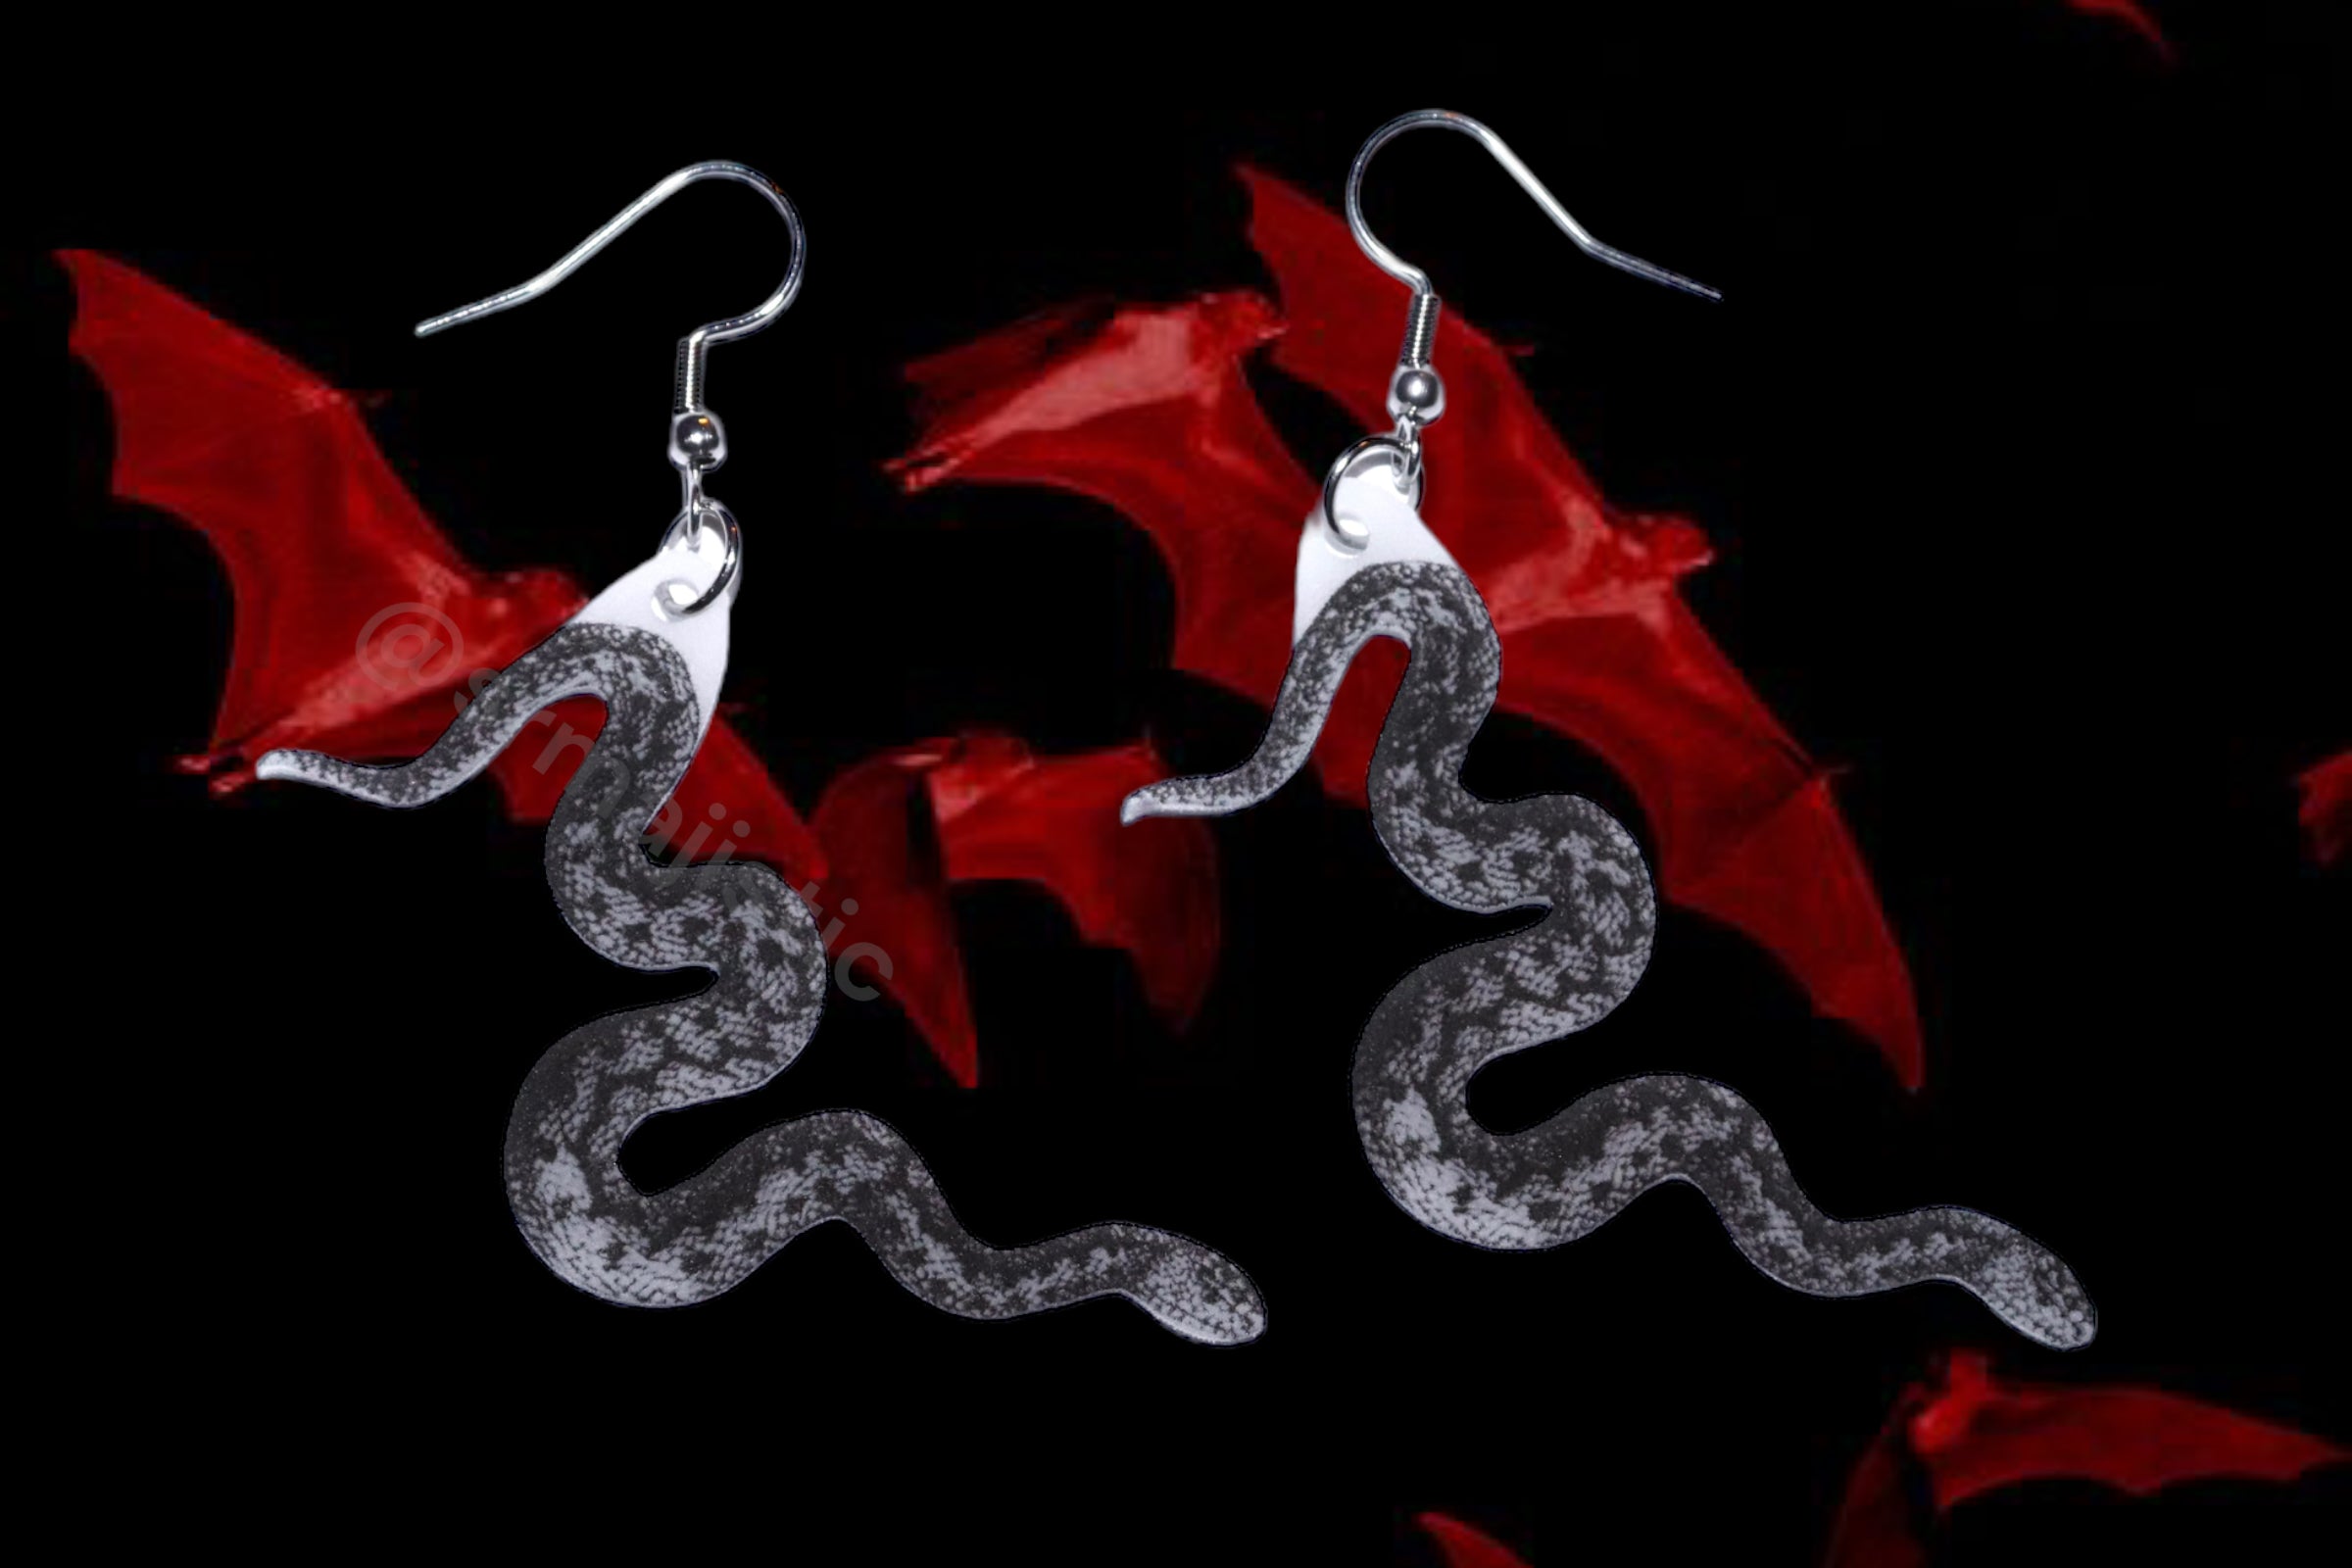 Detailed Black and White Snake Handmade Earrings!